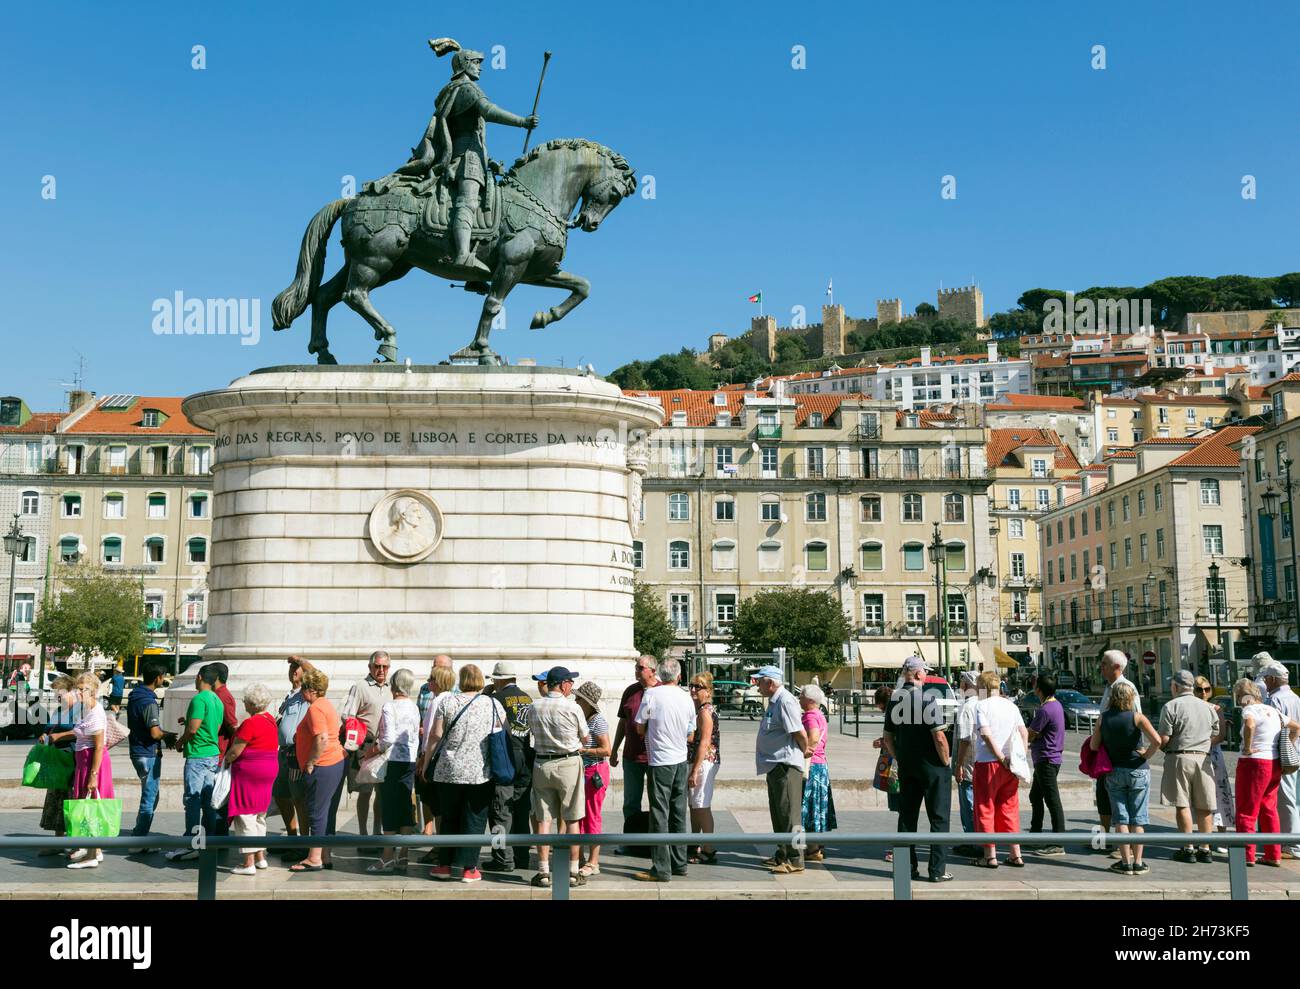 Lisbona, Portogallo. Statua di Dom Joao i a Praca da Figueira. Castelo de Sao Jorge sullo sfondo. La statua del re è opera di Leopoldo de A. Foto Stock